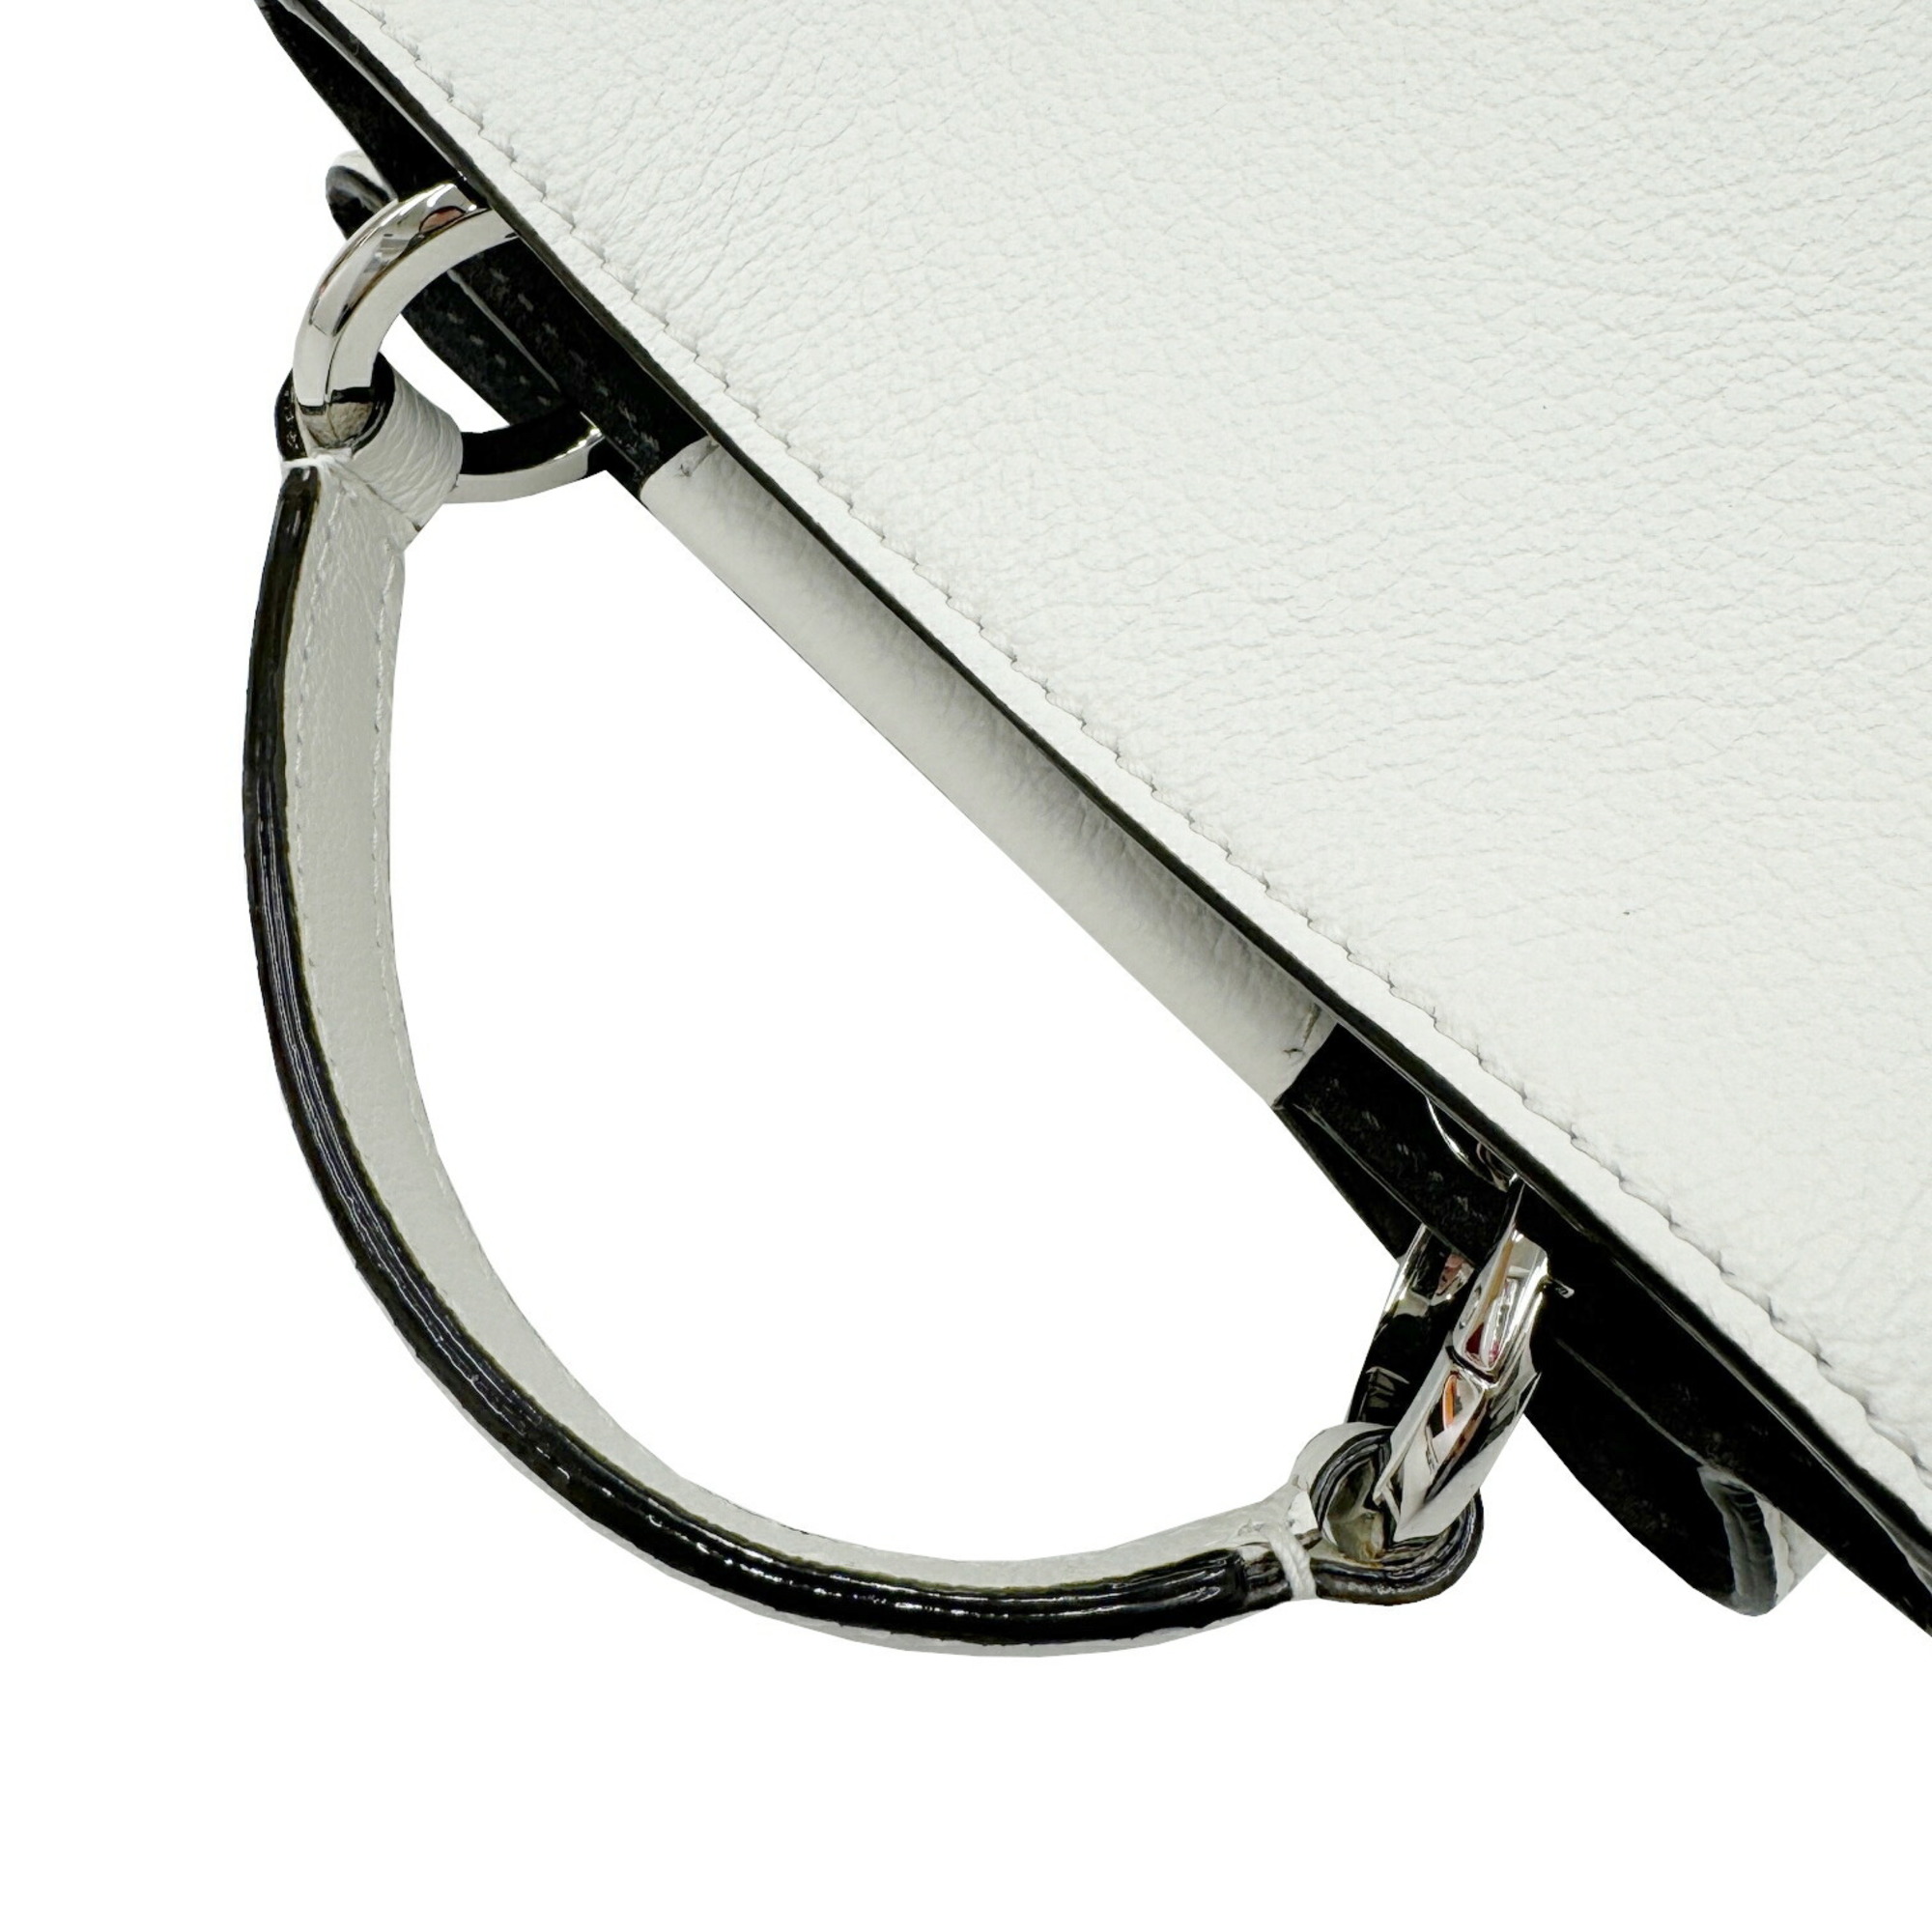 JIMMY CHOO Varennes Handbag Calf Leather White Ladies Shoulder Bag